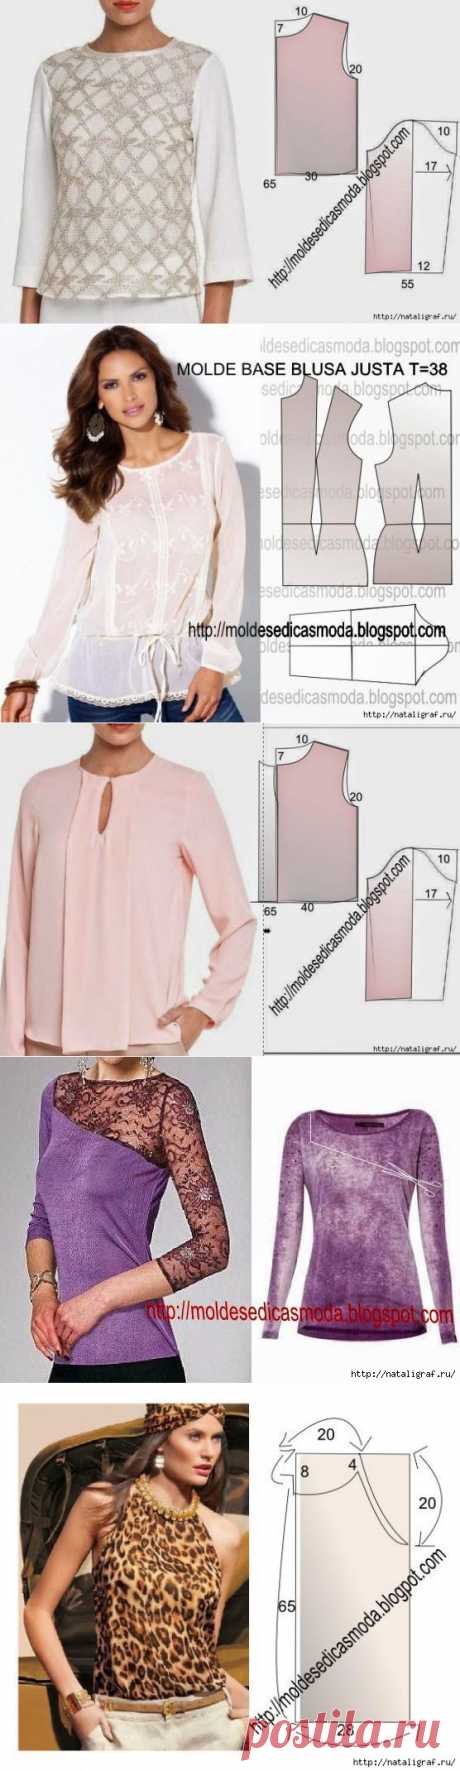 Блузы и блузки с выкройками: